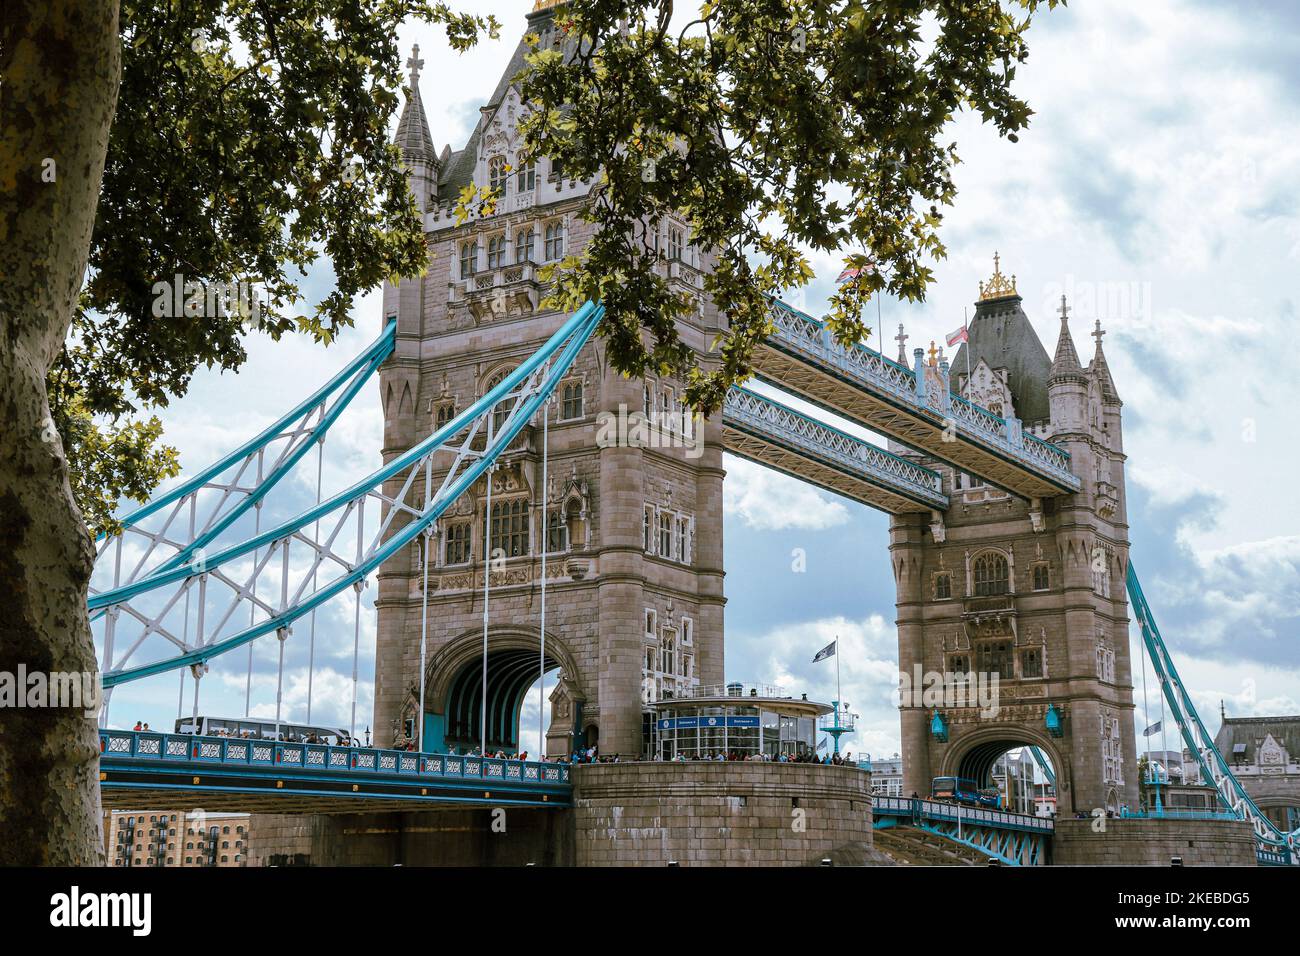 La vue panoramique sur le Tower Bridge de Londres est le plus célèbre monument et attraction touristique. Banque D'Images